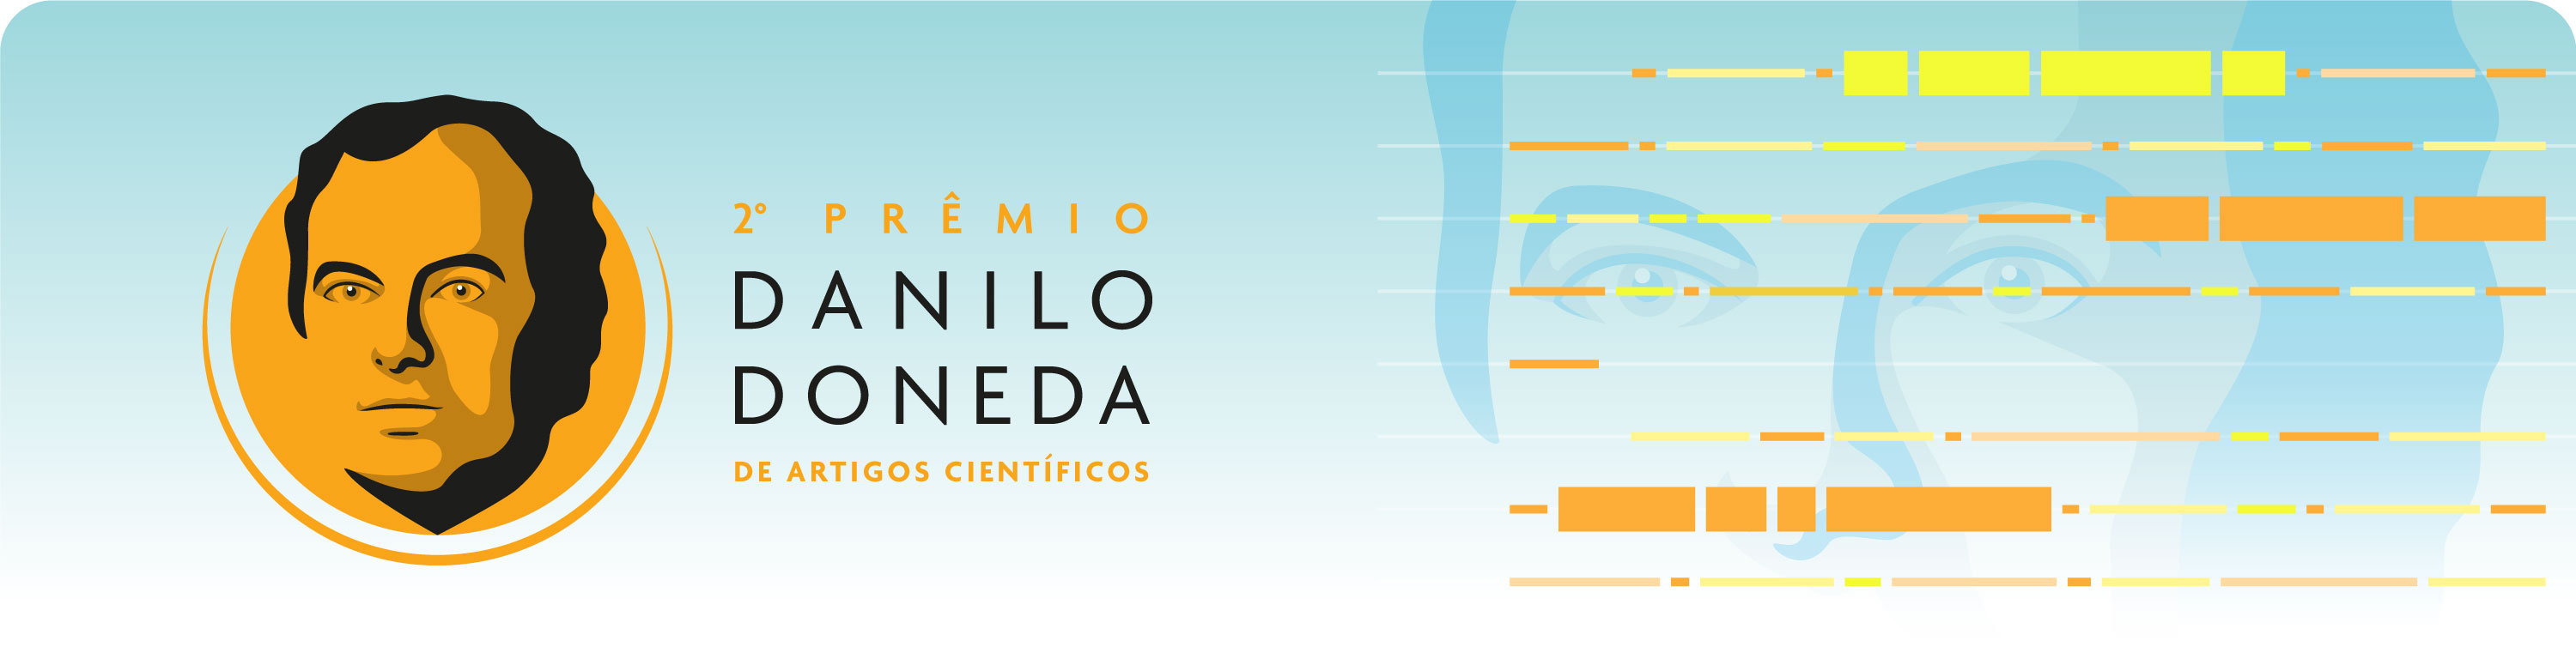 Banner com marca do II Concurso de Artigos Científicos da Autoridade Nacional de Proteção de Dados - Prêmio Danilo Doneda